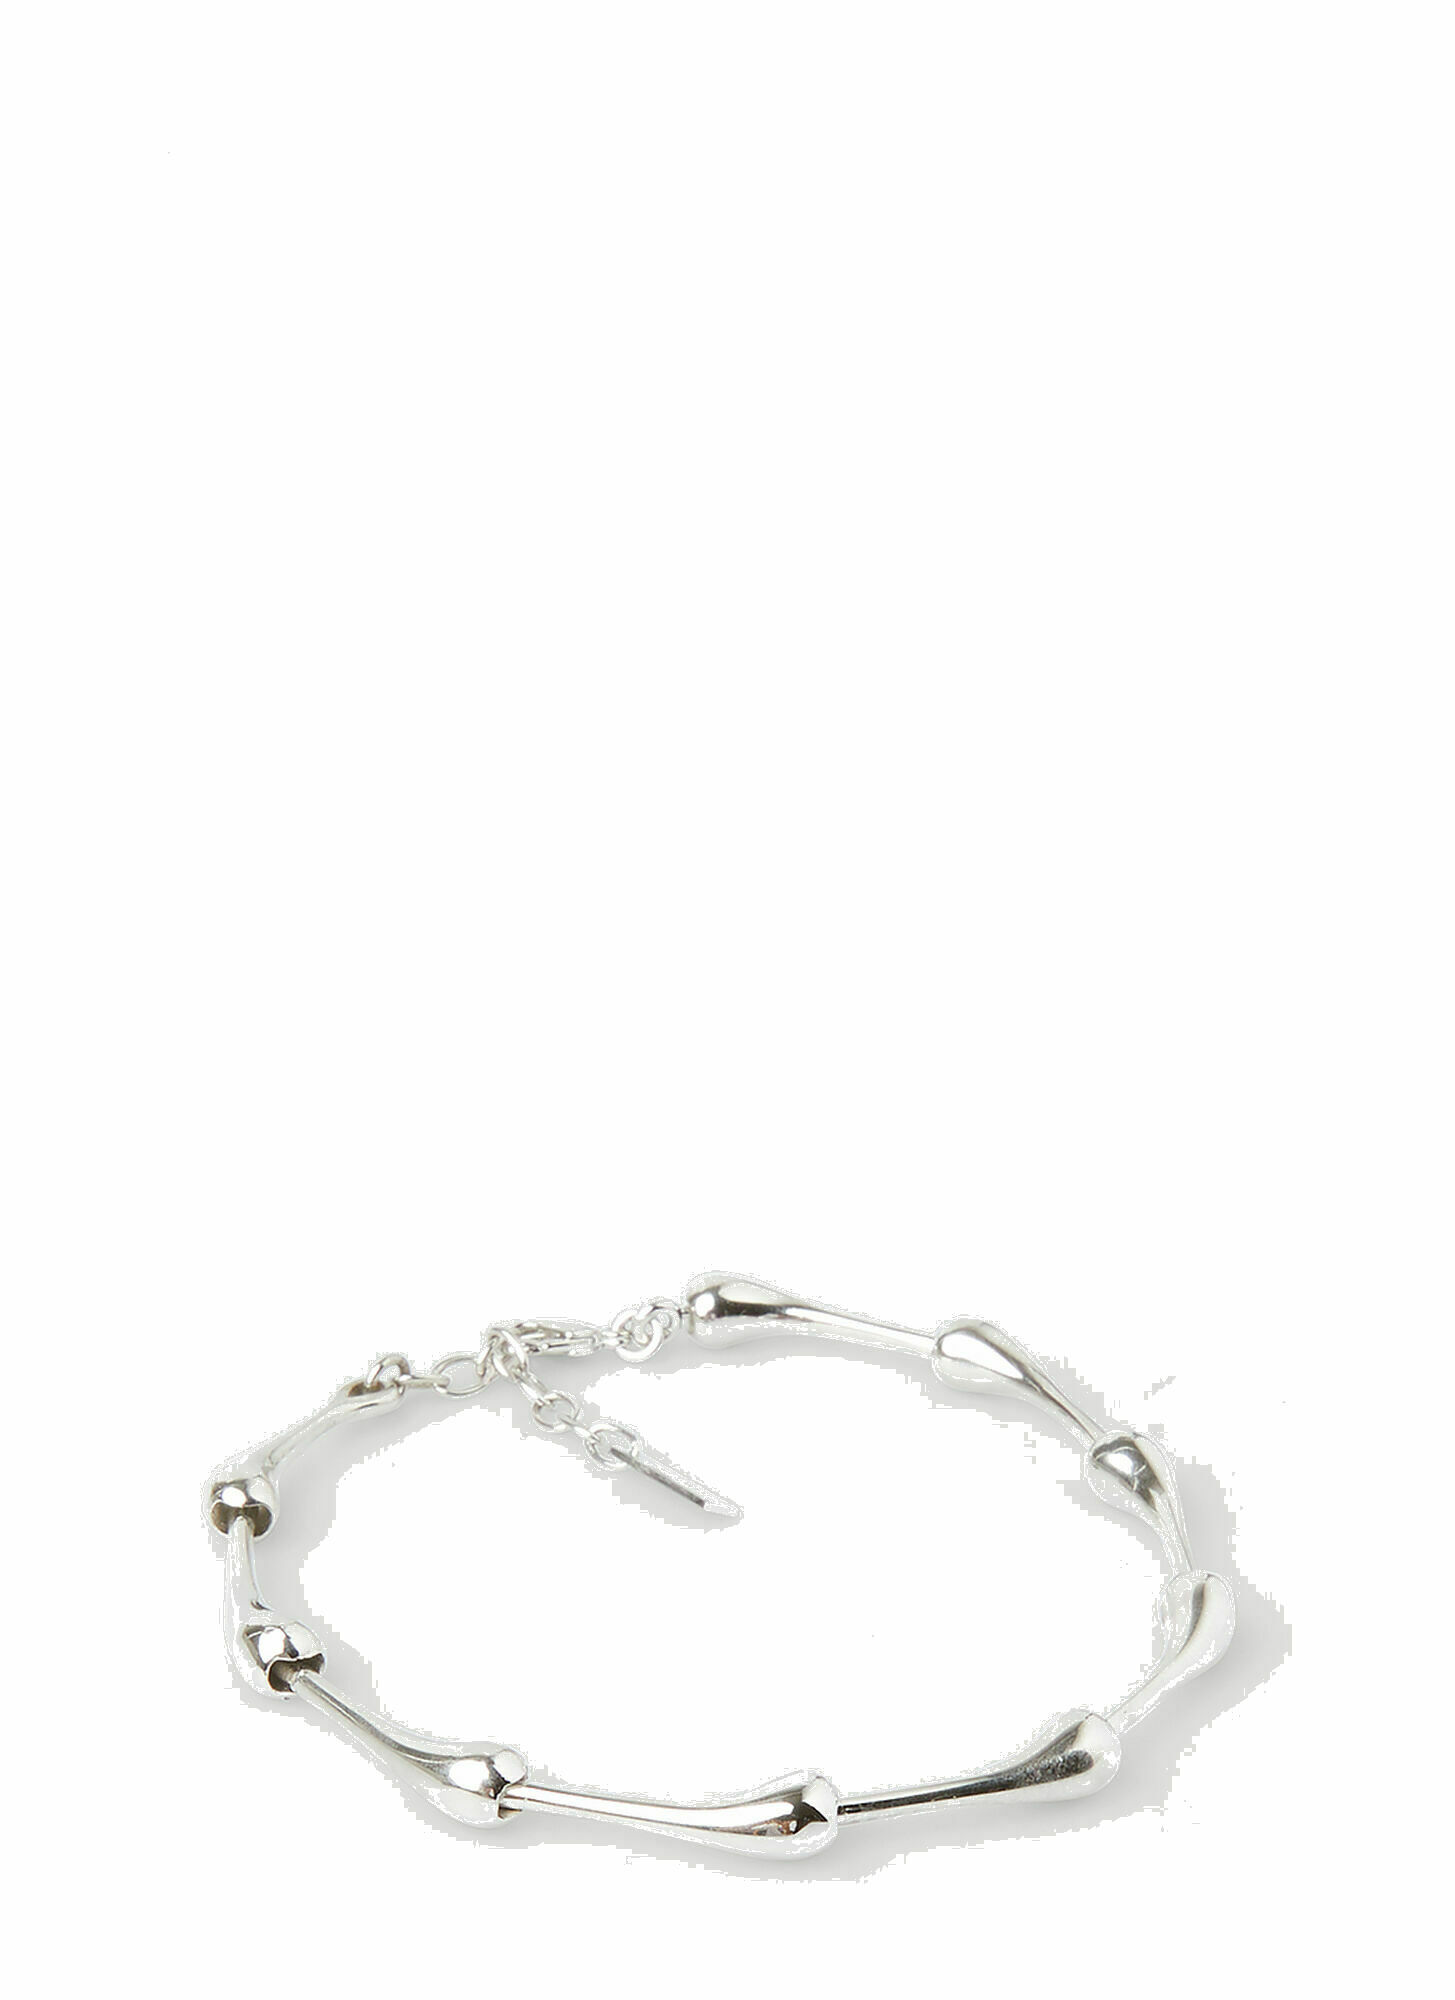 Photo: Large Drop Bracelet in Silver